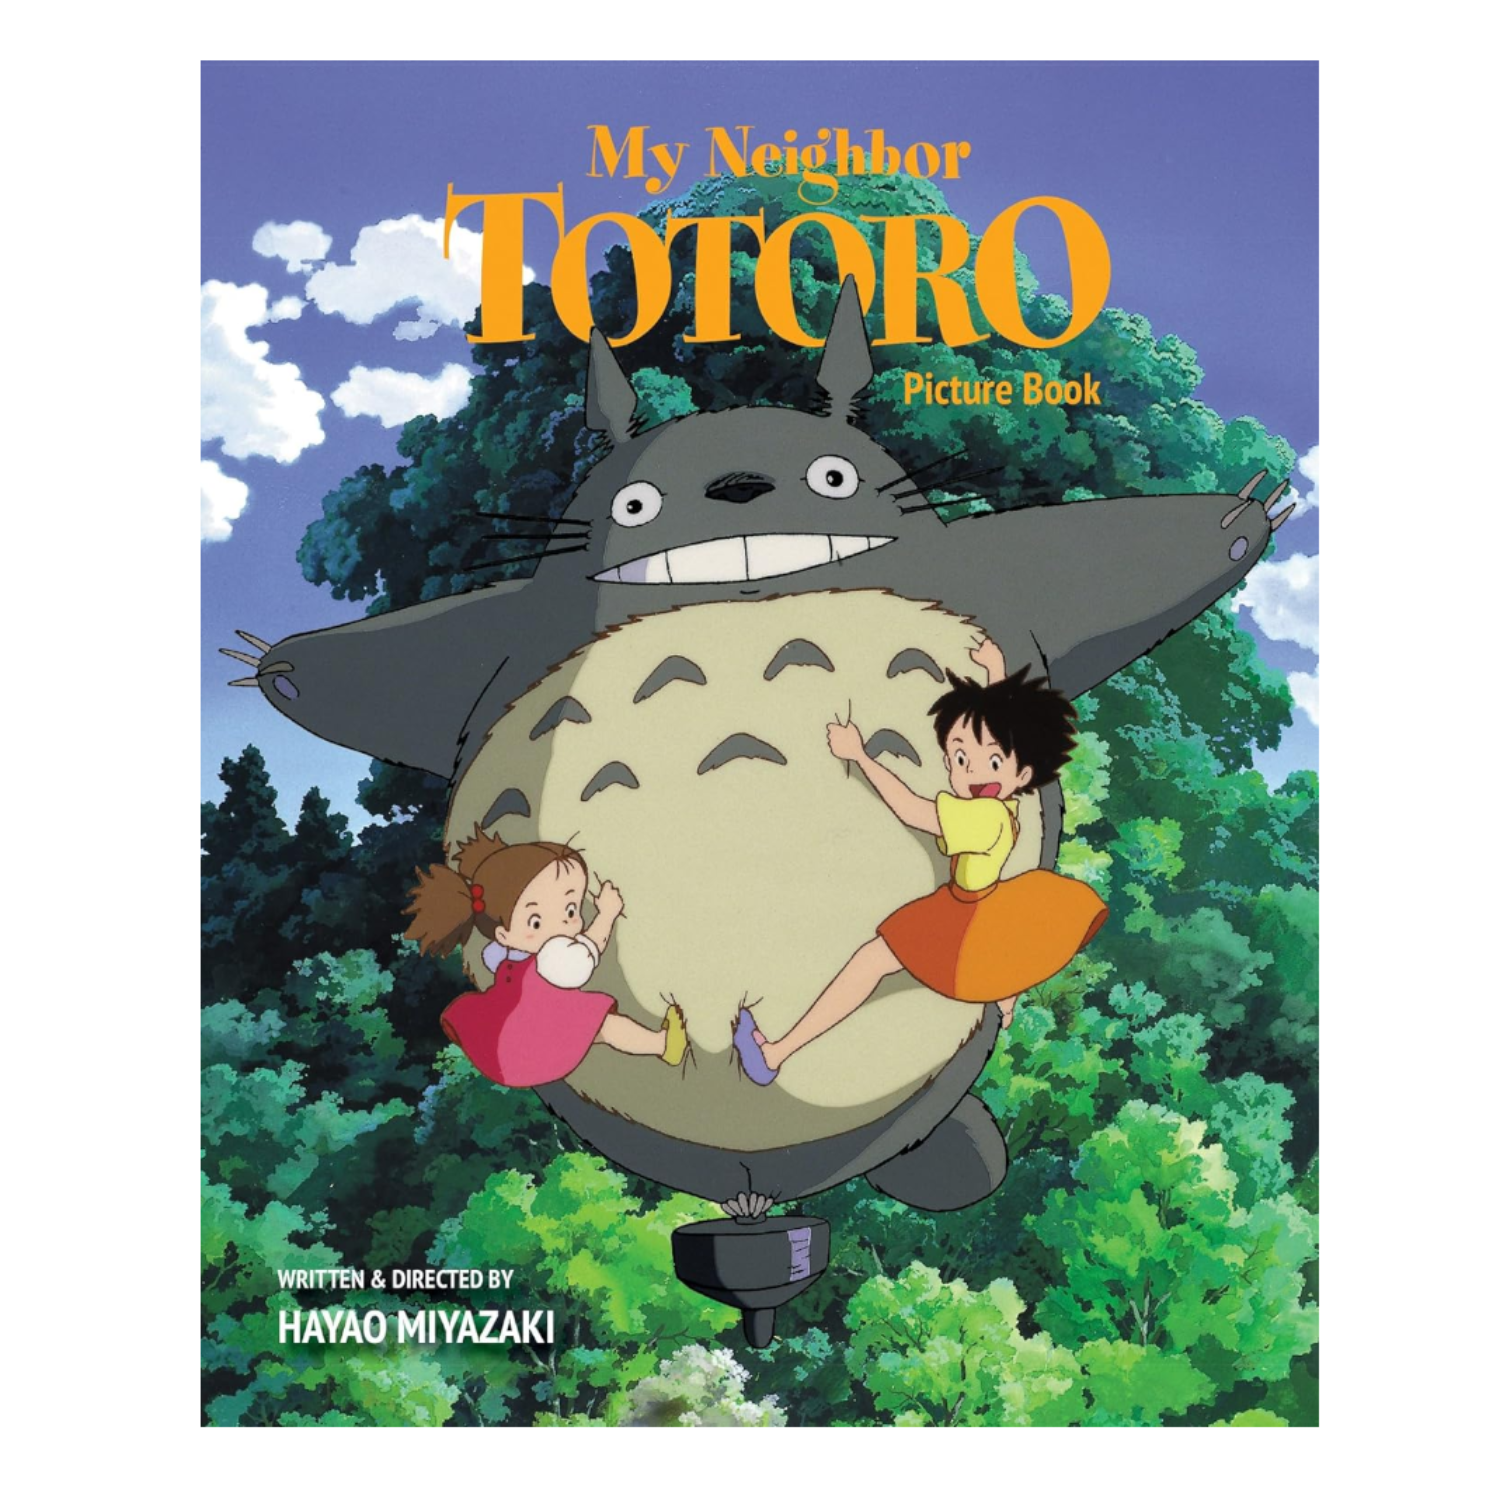 Livro de imagens do meu vizinho Totoro